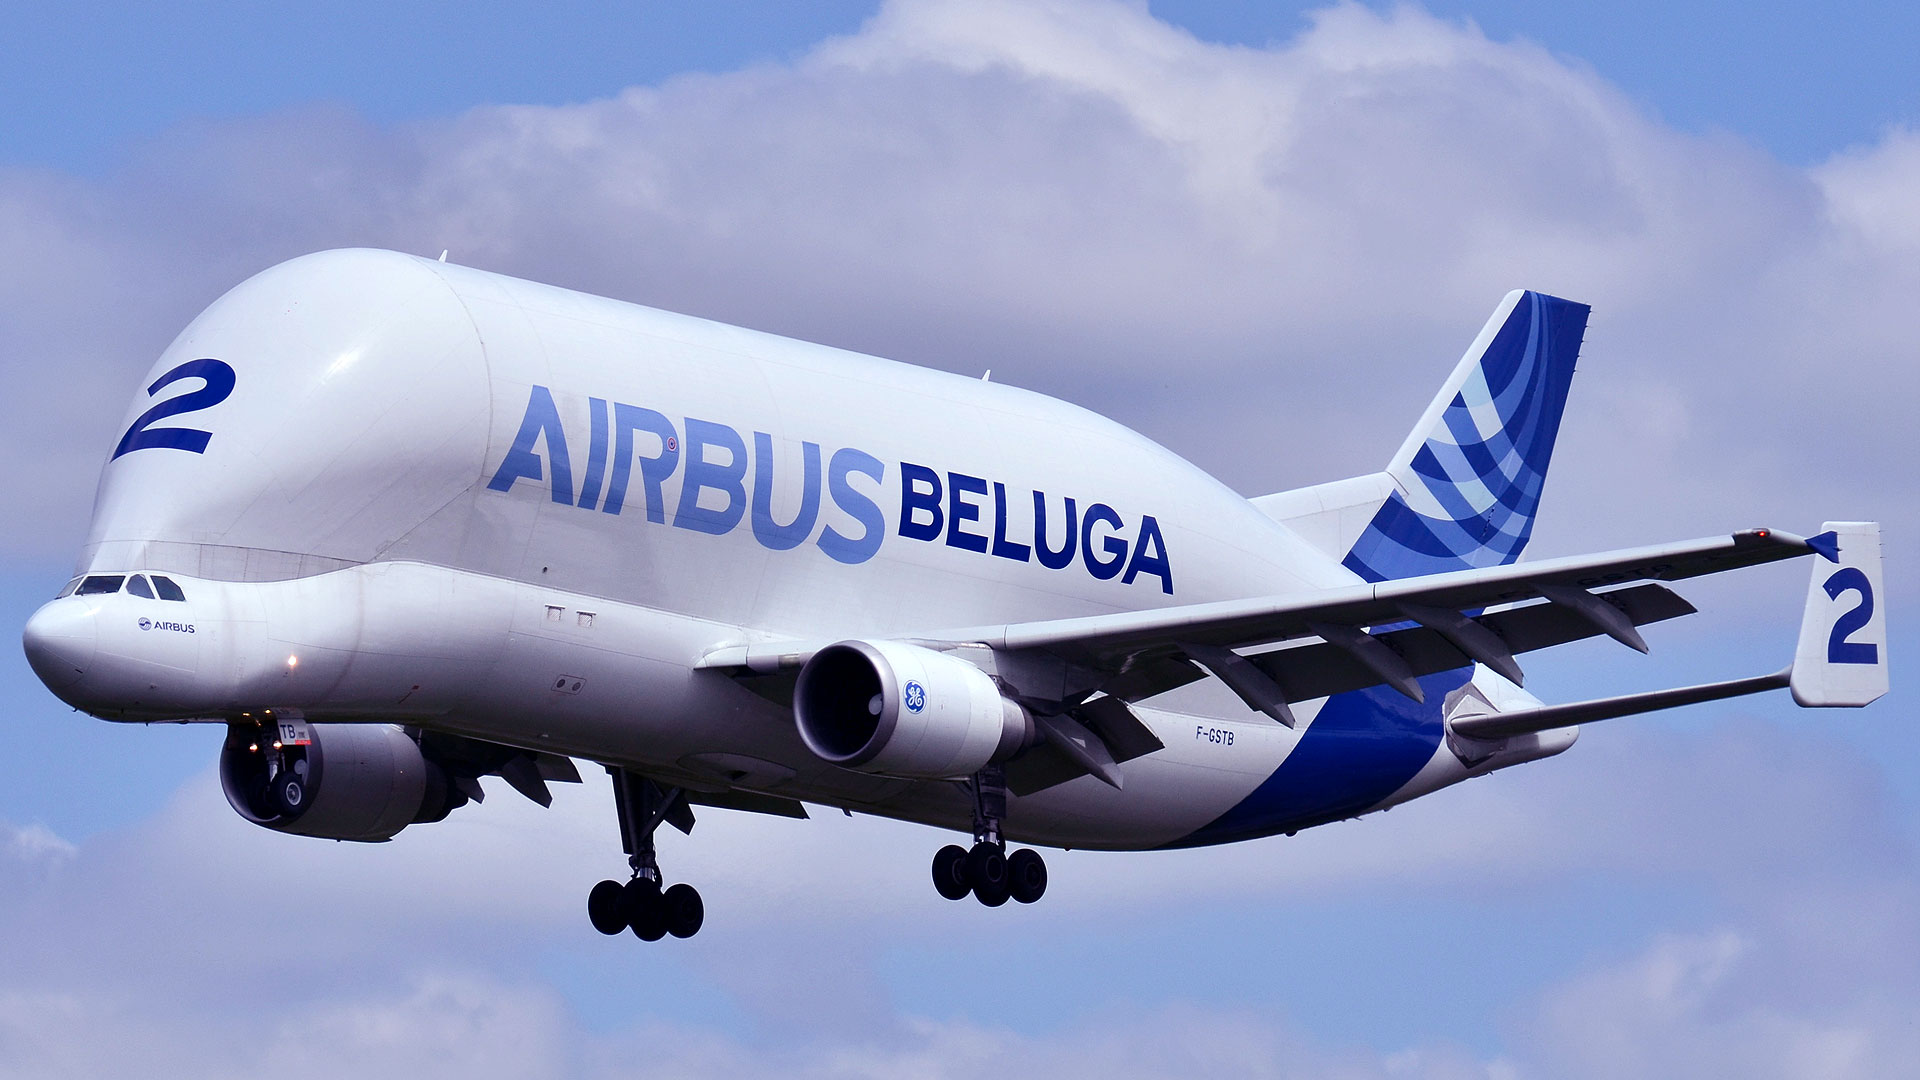 L'Airbus A300-600ST ou l'avion « Beluga »